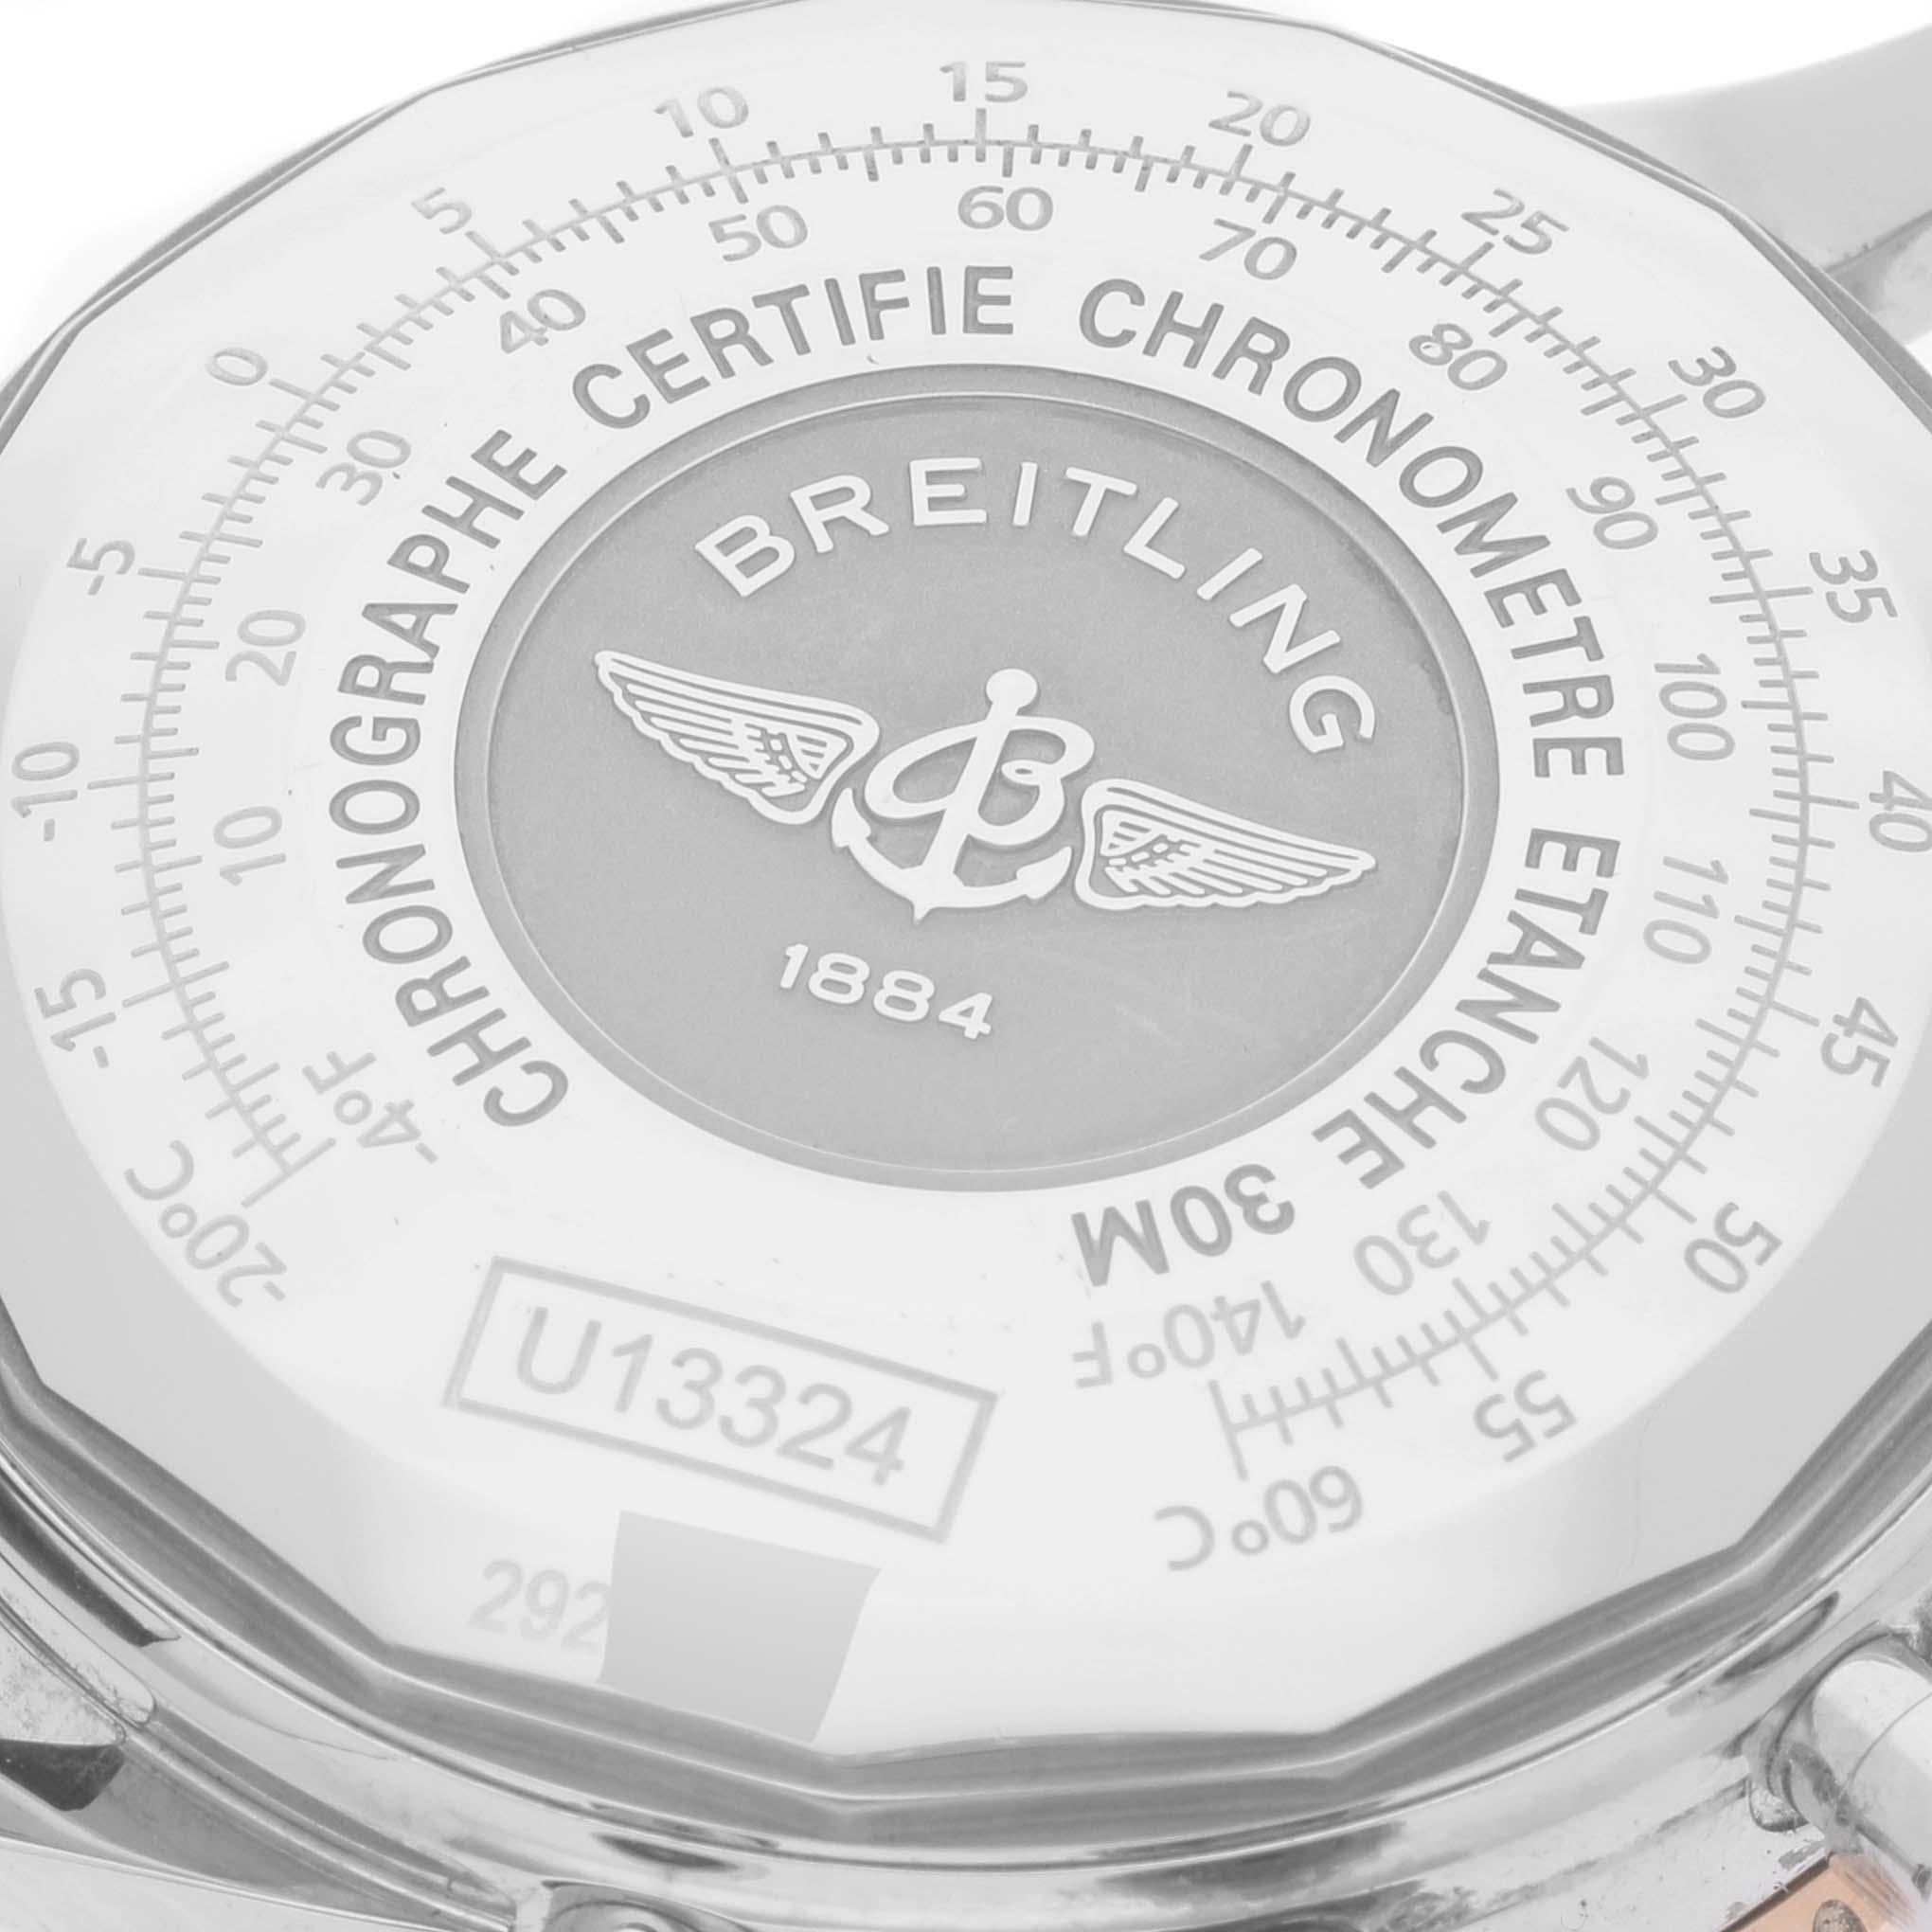 Montre homme Breitling Navitimer 1 cadran noir acier or rose U13324. Mouvement automatique à remontage automatique, officiellement certifié chronomètre. Fonction chronographe. Boîtier en acier inoxydable de 41.0 mm de diamètre. Couronne et poussoirs